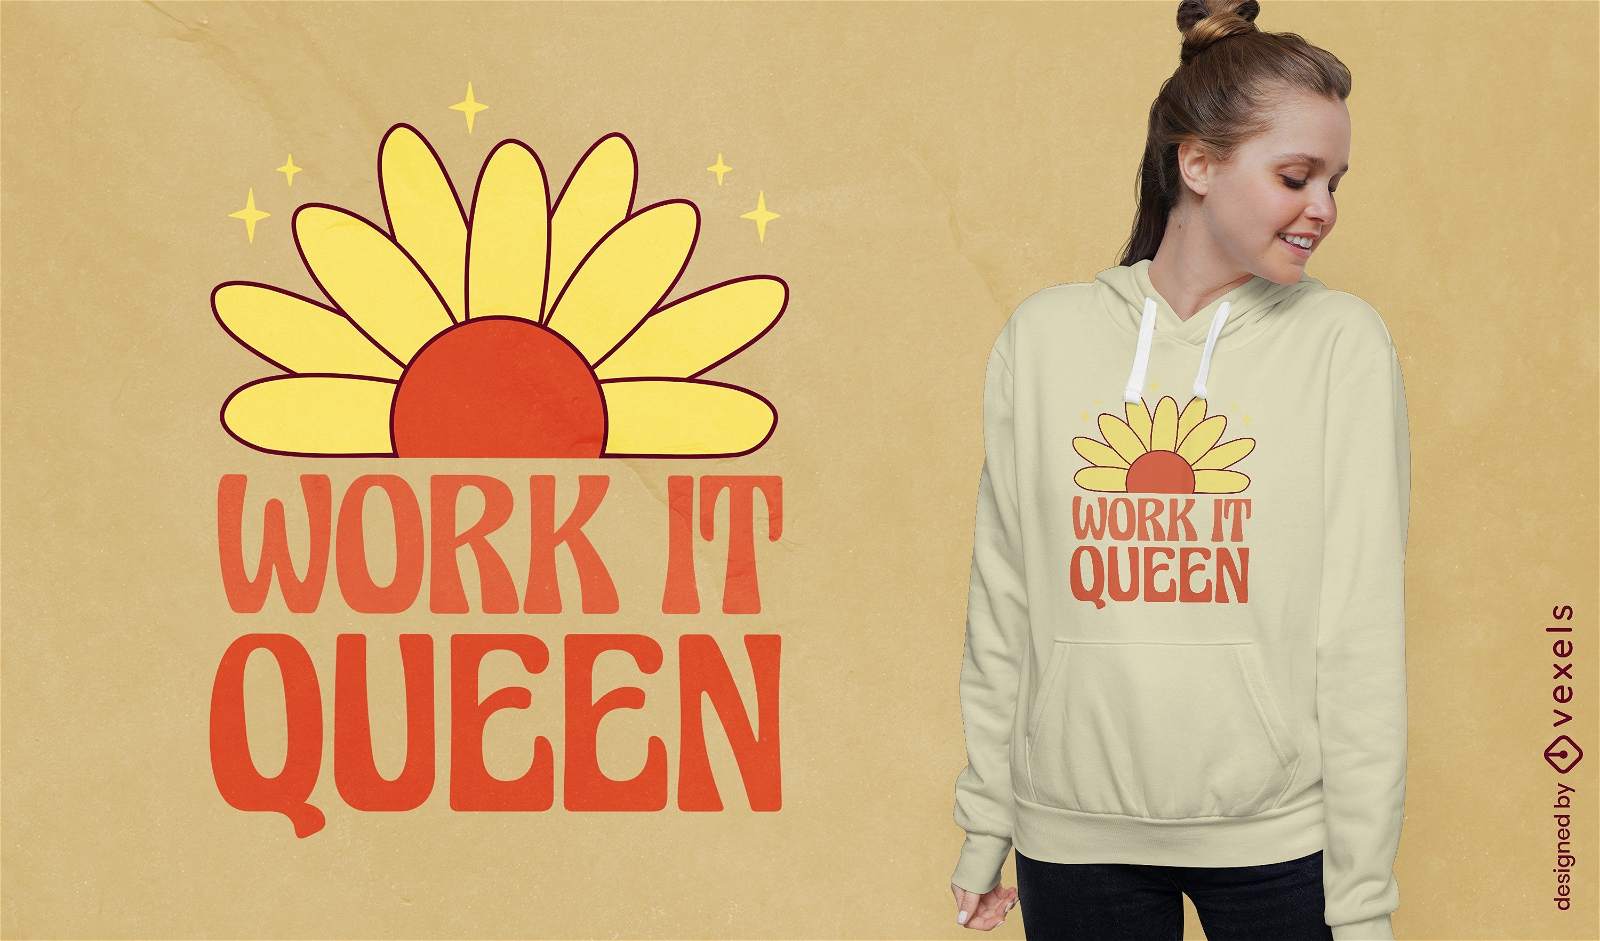 Work it queen dise?o de camiseta de cita feminista